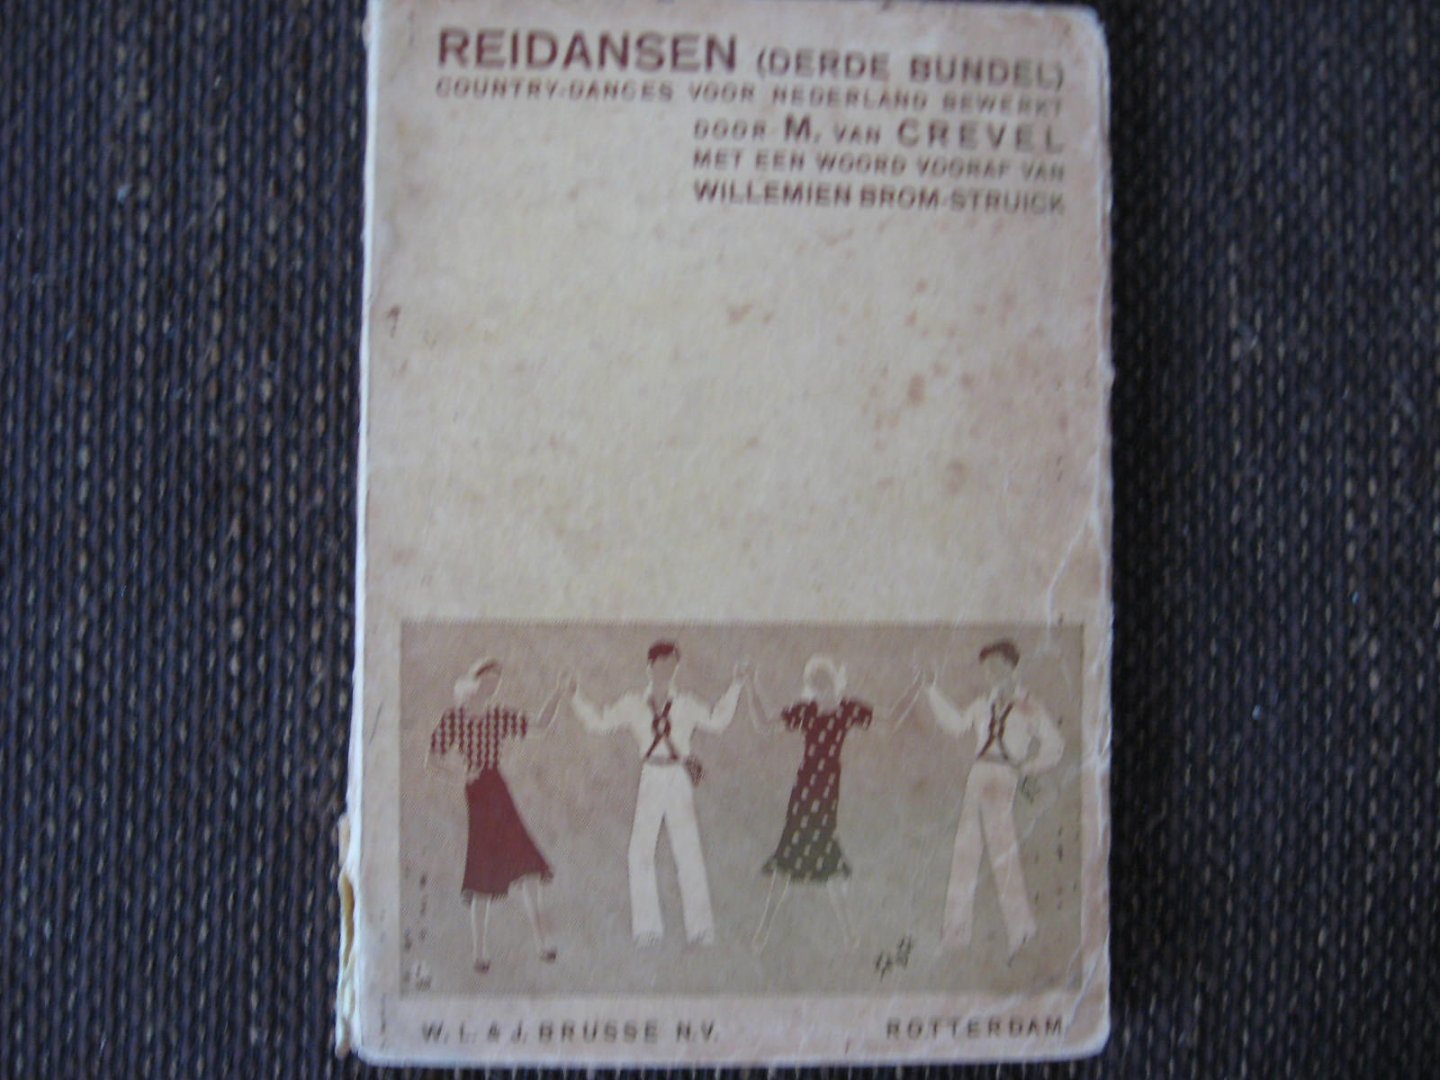 Crevel, M. van - Reidansen (Derde Bundel) country-dances voor Nederland bewerkt.